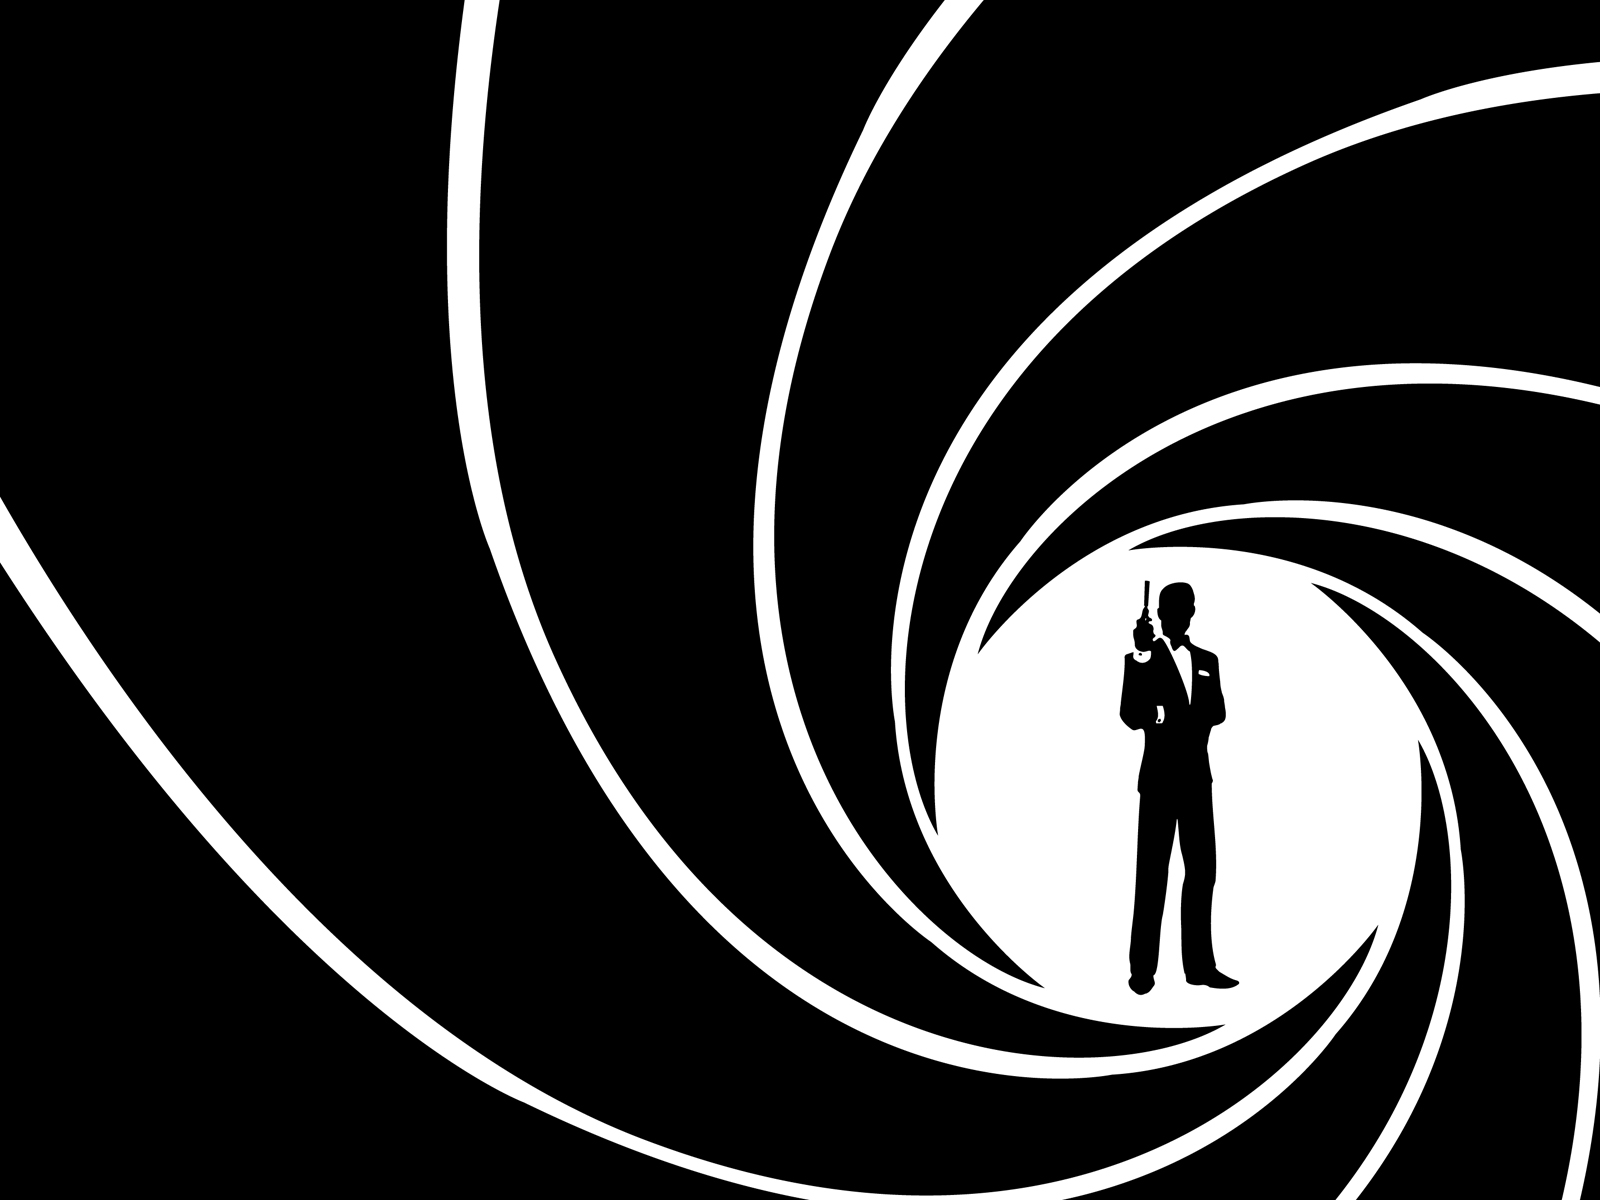 James Bond spiral graphic